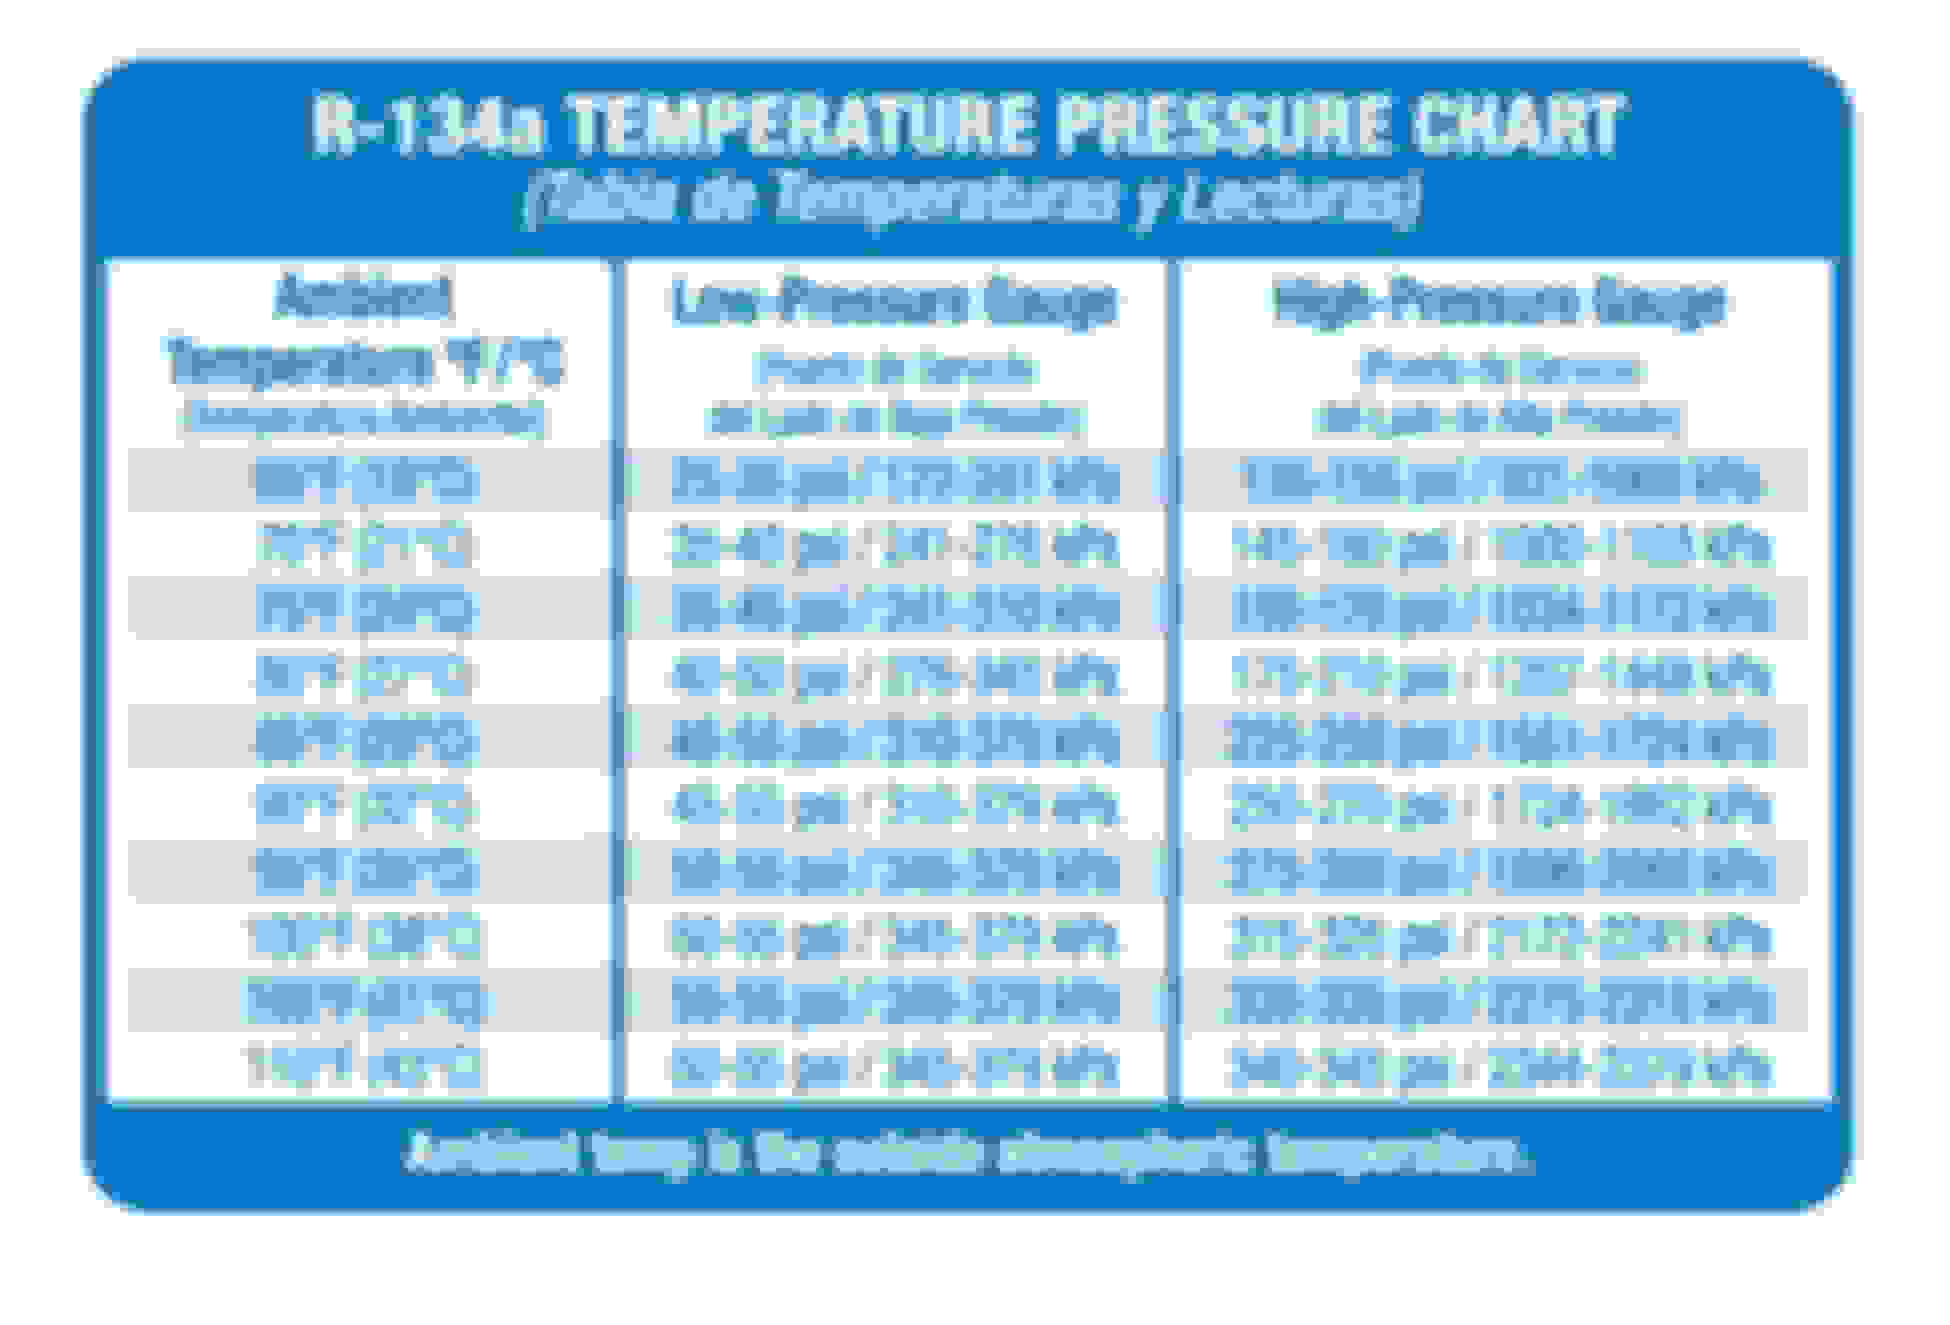 Ford F150 Ac Pressure Chart